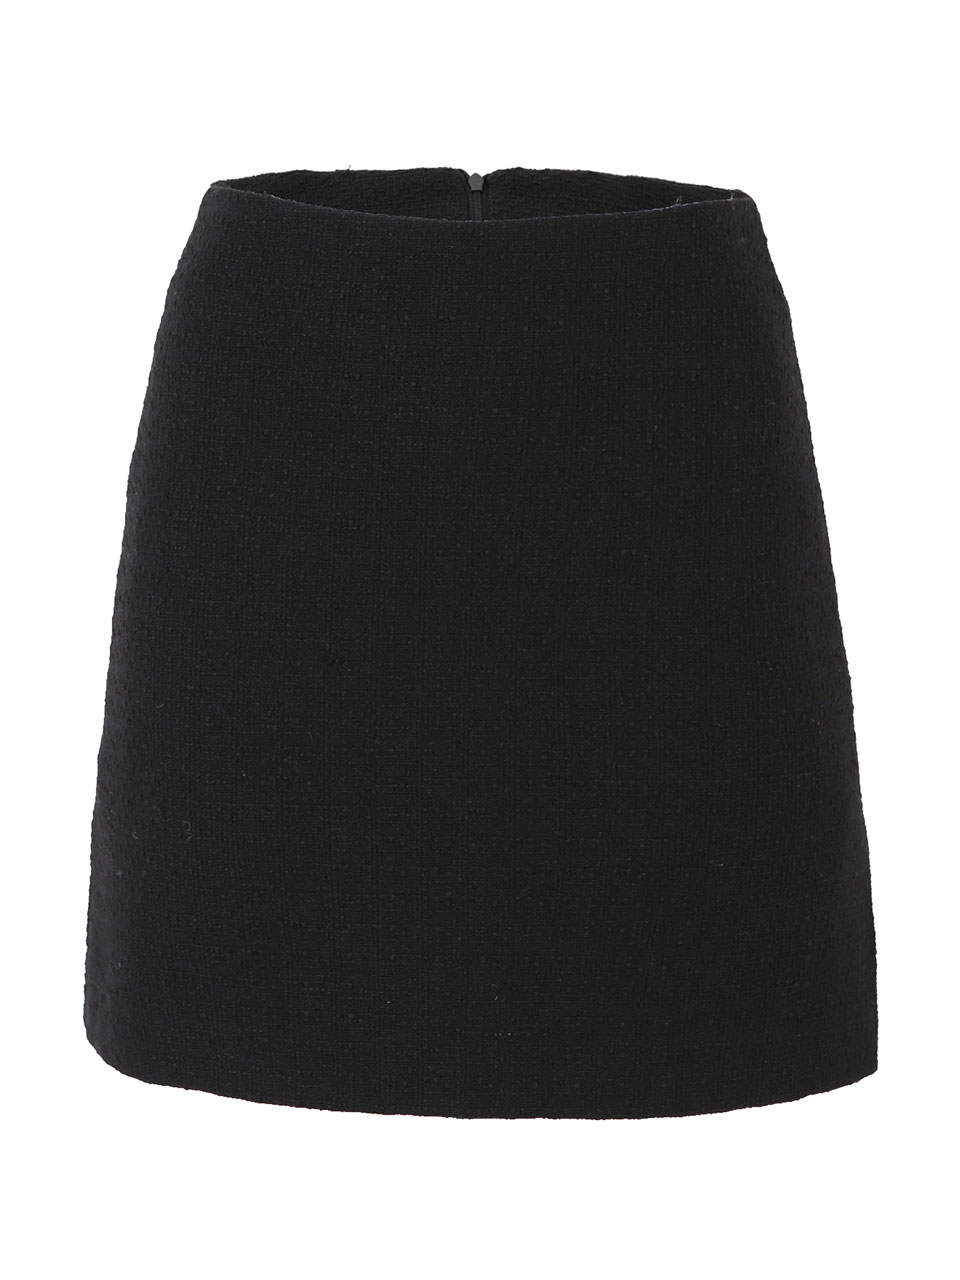 GUKATweed side-cut skirt